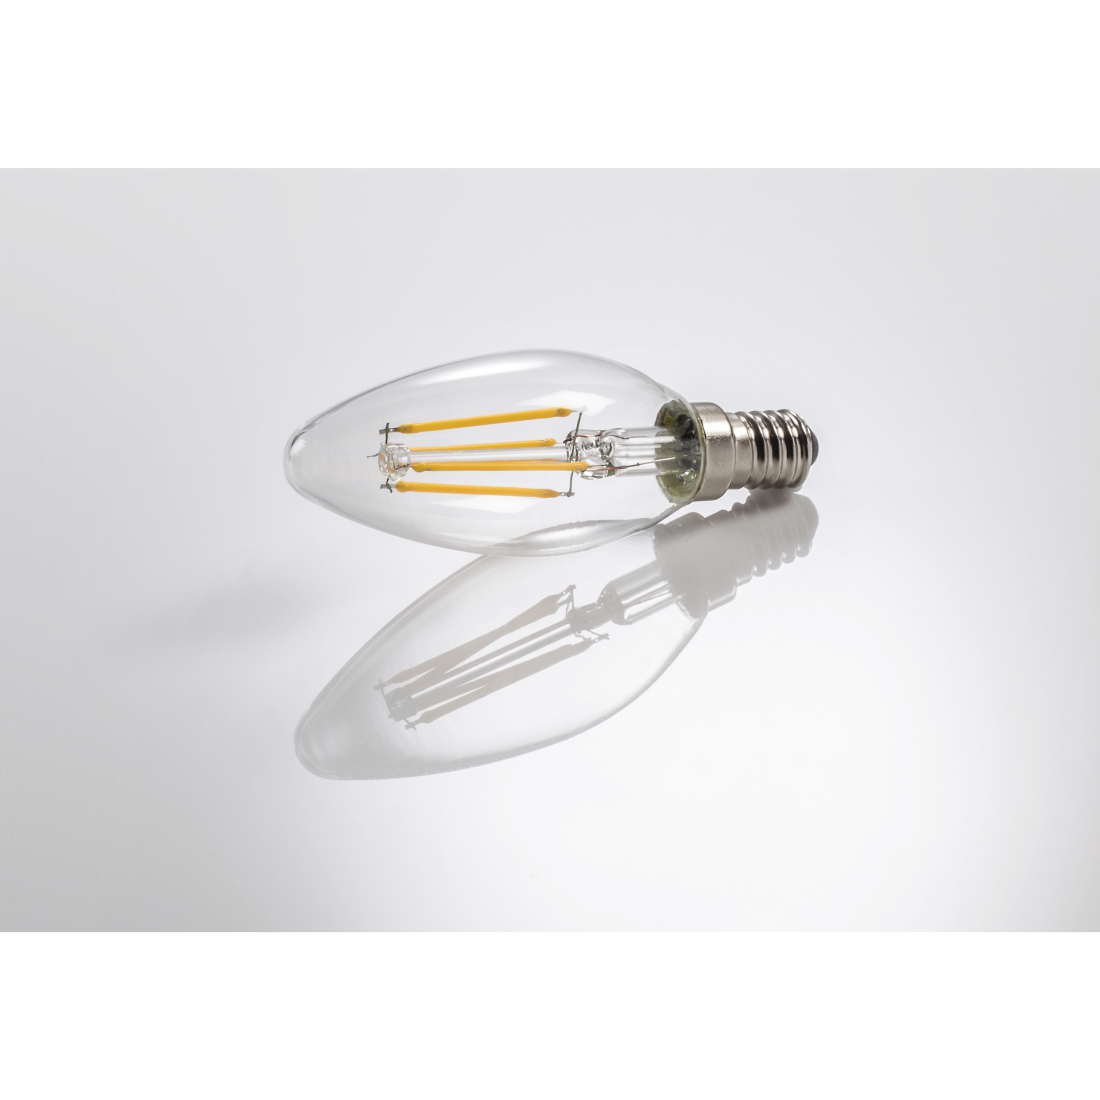 abx3 High-Res Image 3 - Xavax, Ampoule filament LED, E14, 470lm rempl. 40W, amp. bgie, blc chd, 2 p.